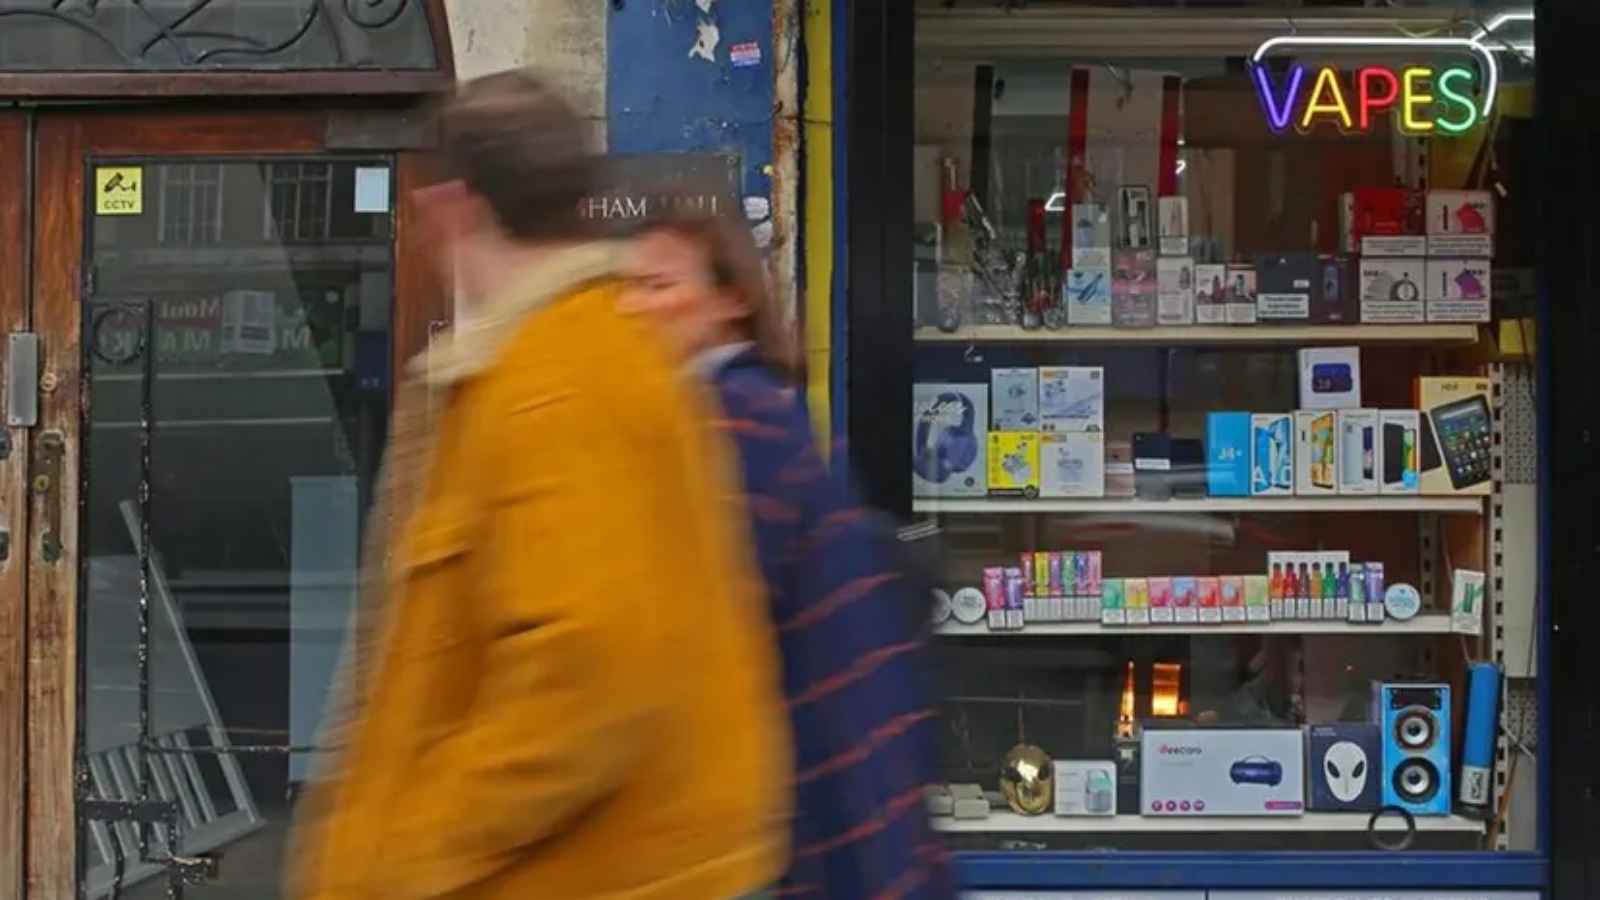 أشخاص يسيرون بالقرب من بائع جرائد يعلن عن بيع السجائر الإلكترونية في ستريثام هيل، في جنوب لندن، في 1 نيسان (أبريل) 2023